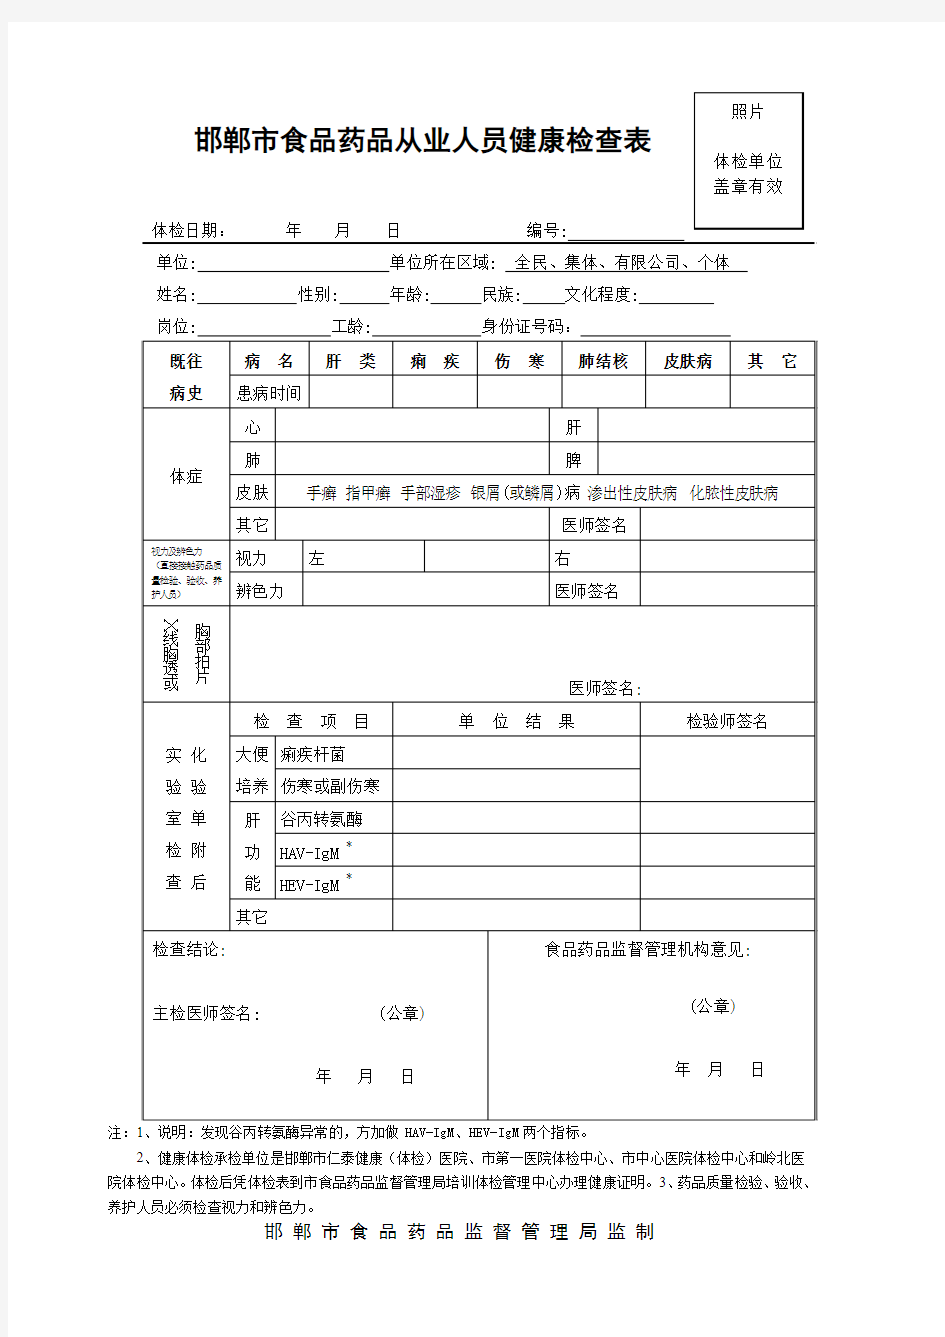 邯郸市食品药品从业人员体检表